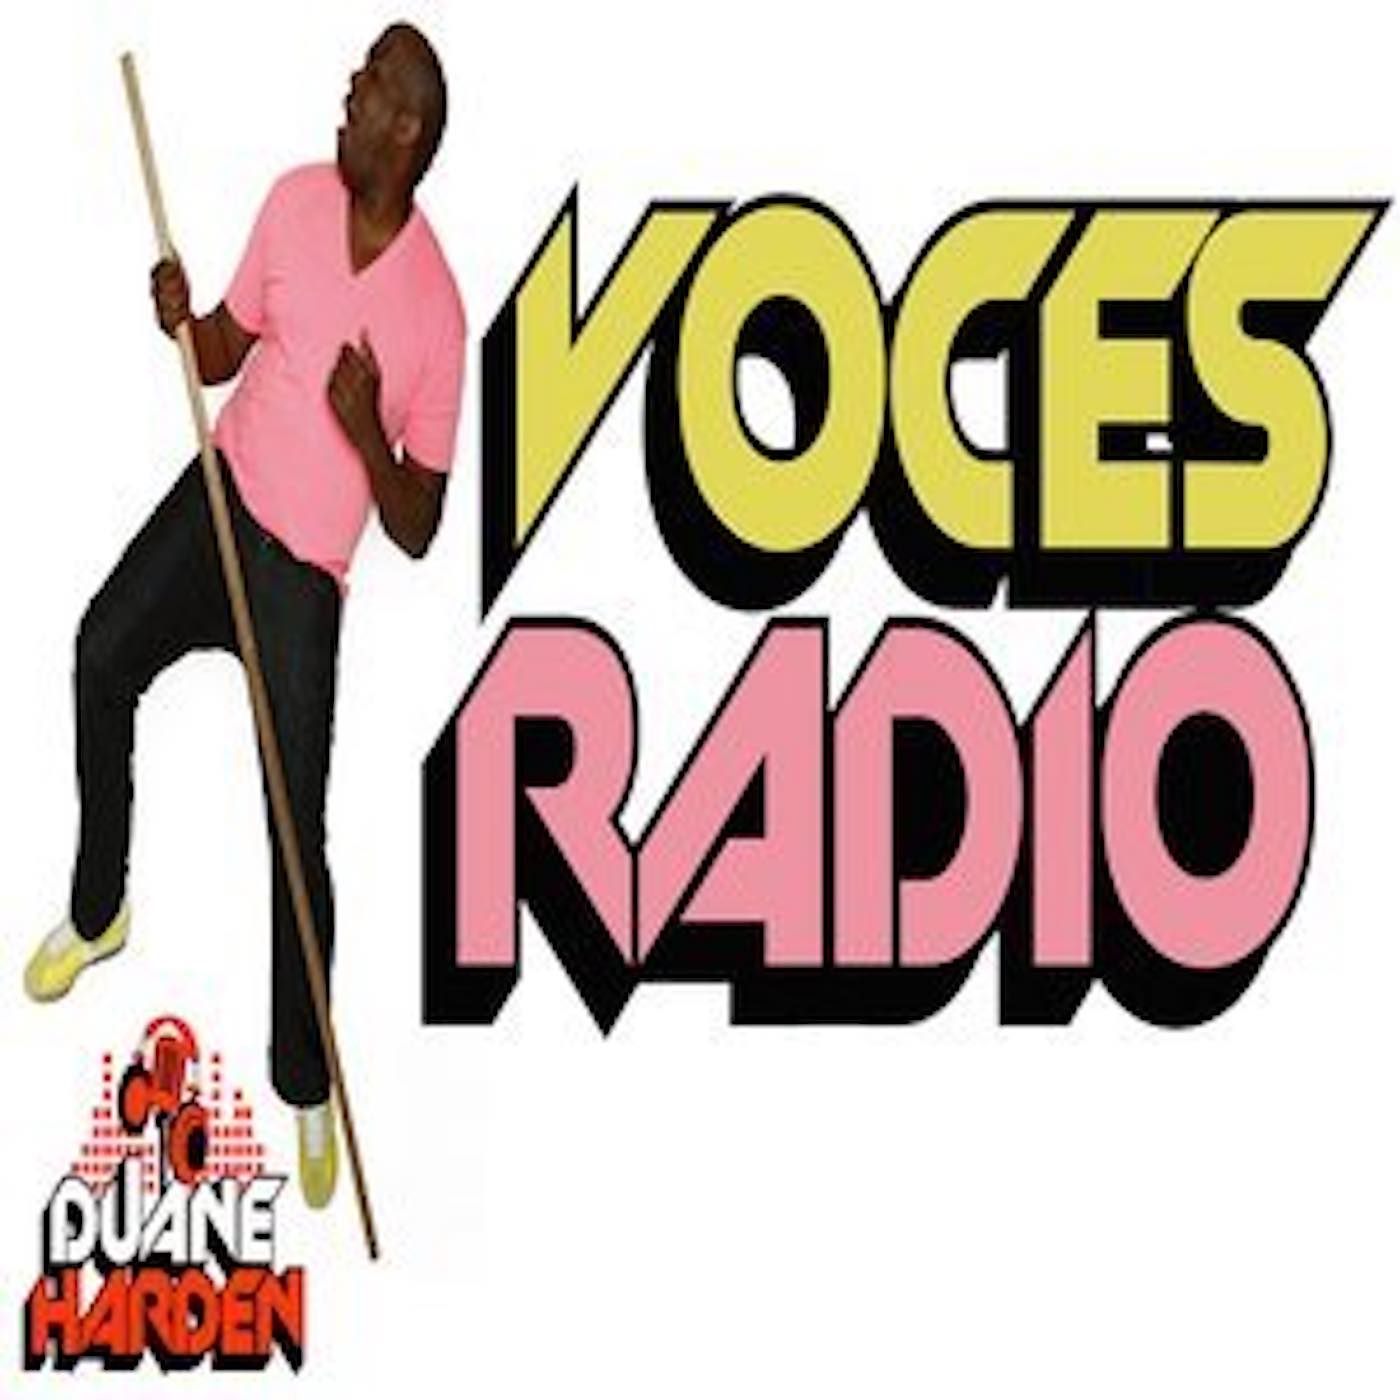 Duane Harden presents Voces Radio